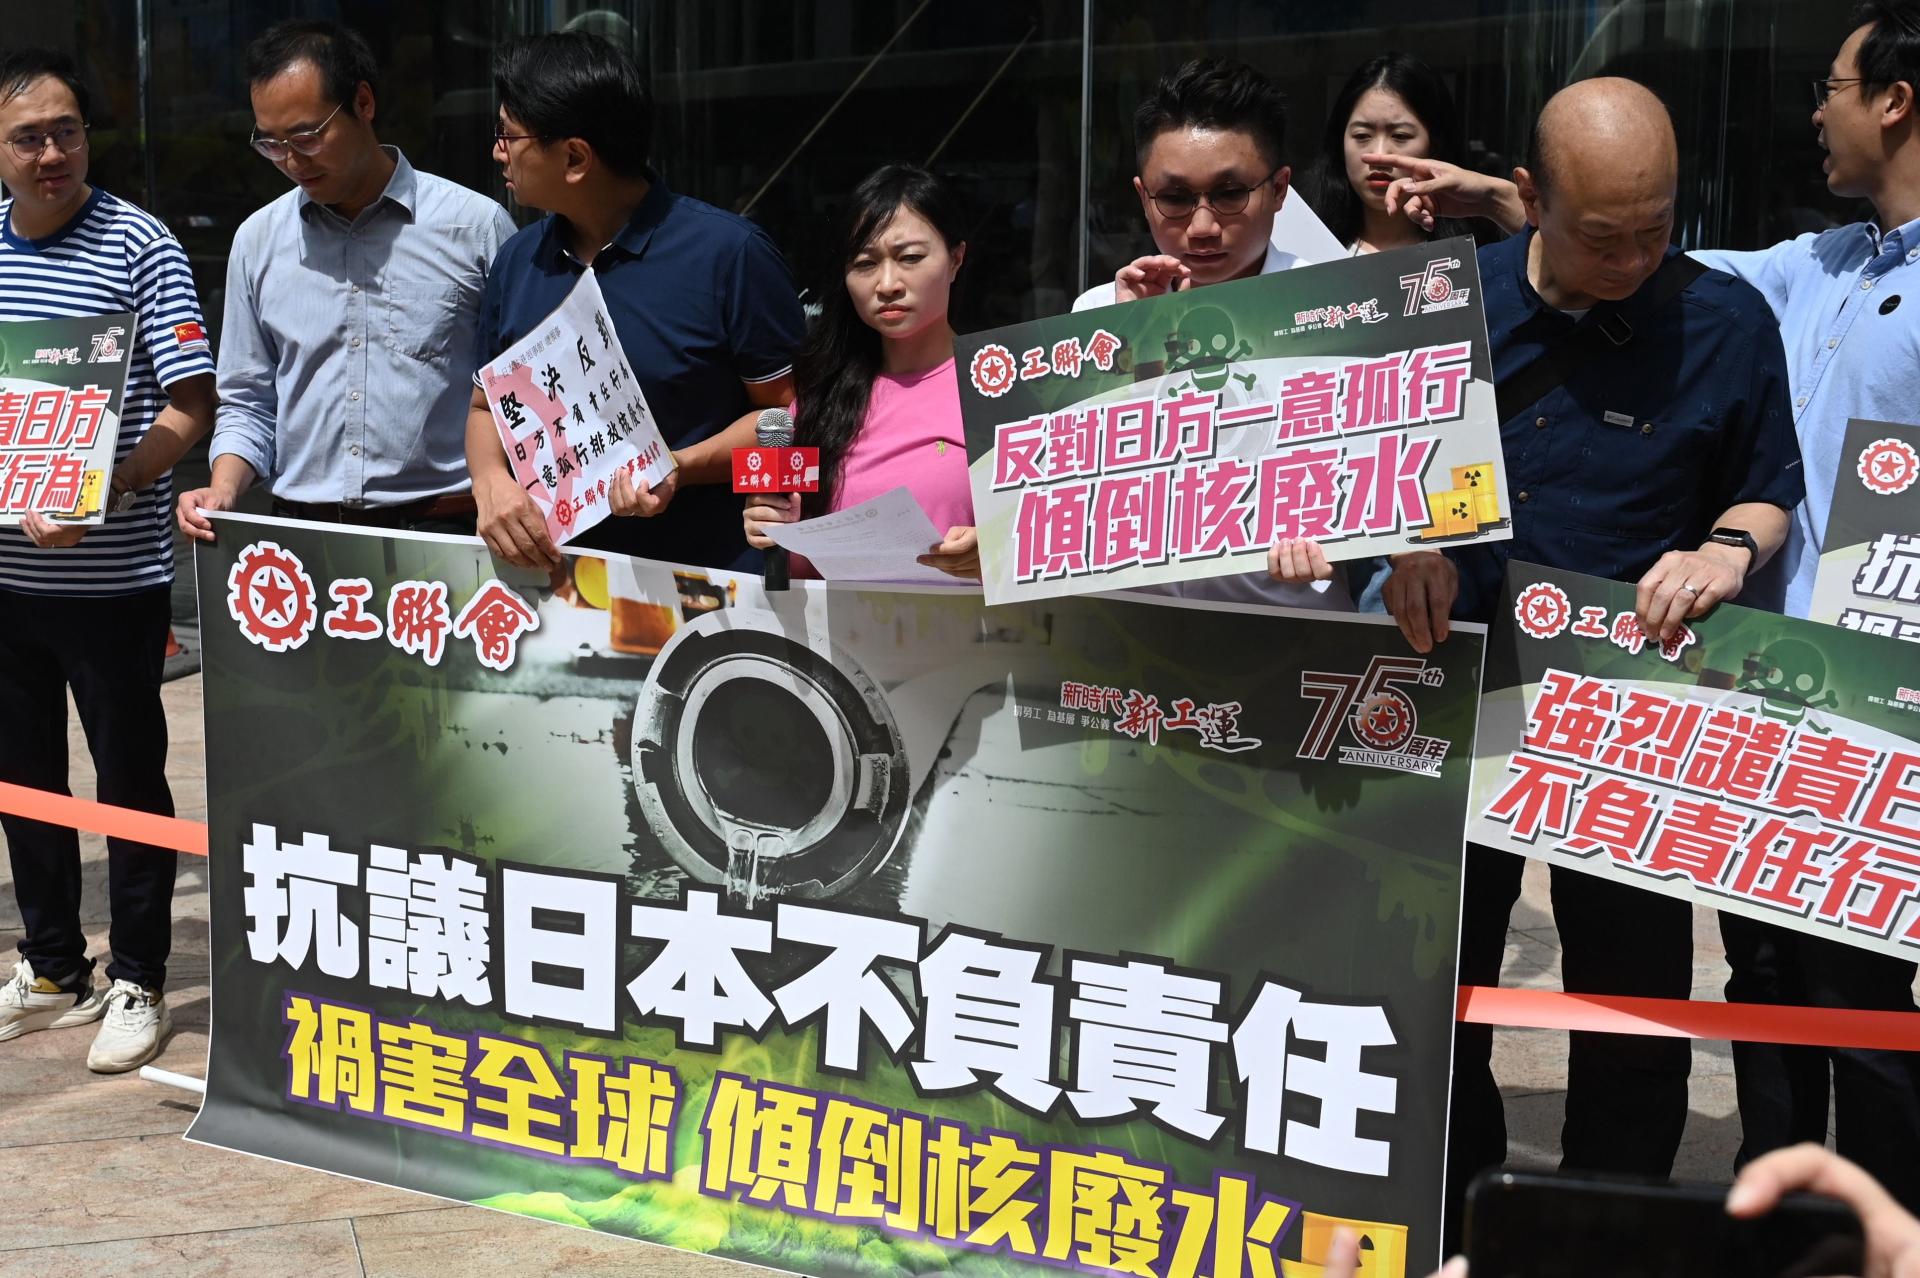 Des membres de la Confédération des syndicats de Hongkong manifestent devant le consulat du Japon, à Hongkong, après l’annonce de la date de rejet des eaux usées dans l’océan, le 22 août 2023. Sur la banderole, on peut lire : « Protestation contre l’irresponsabilité du Japon qui met en danger la planète en rejetant des eaux radioactives ».